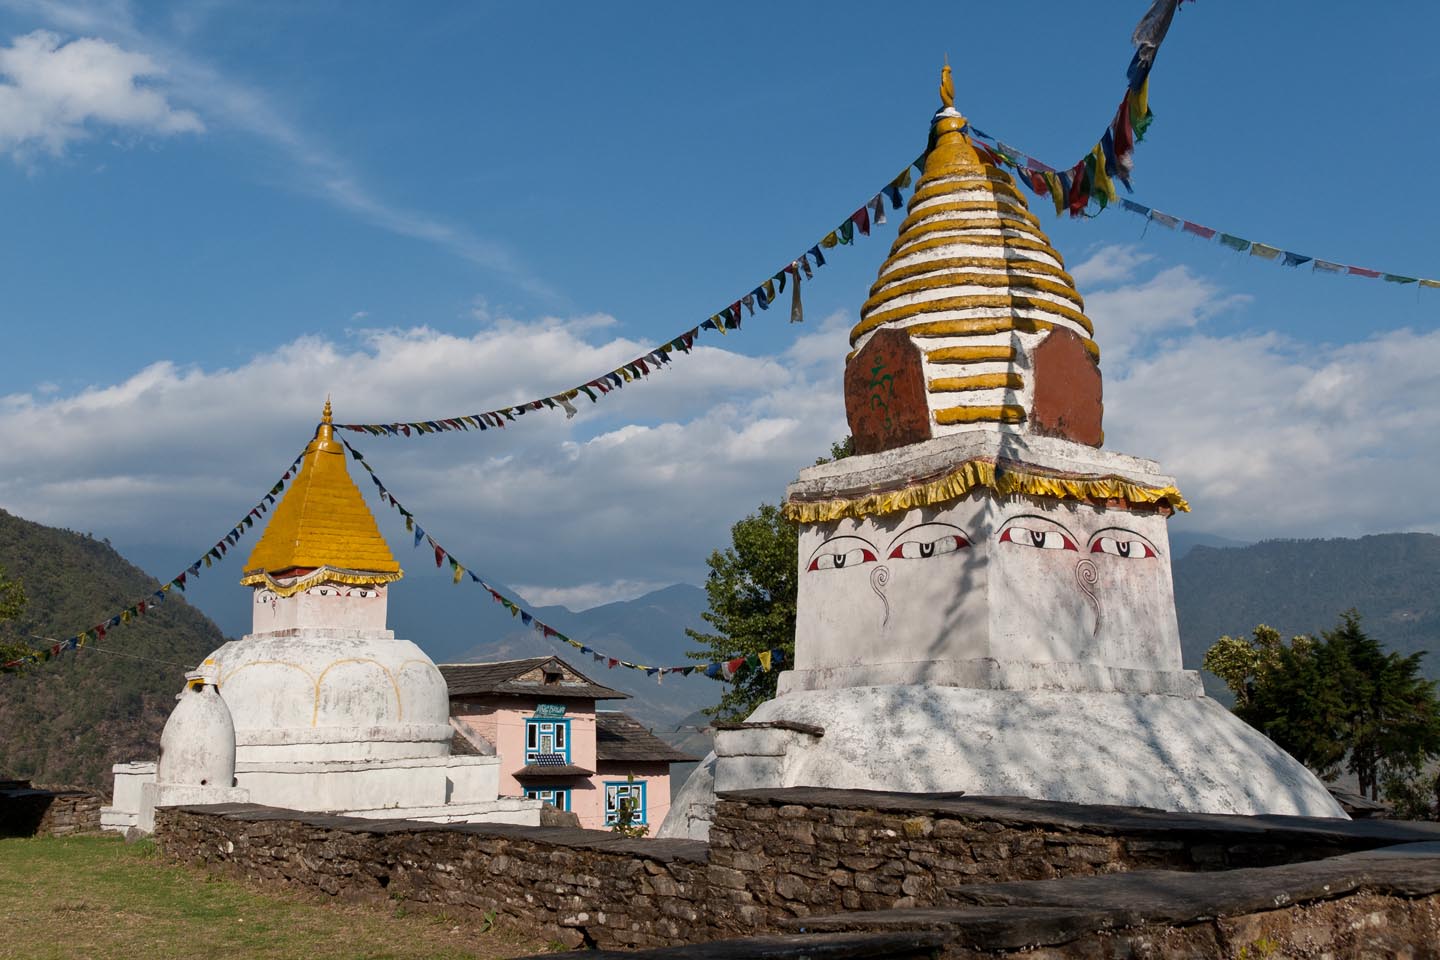 The stupas at Bhandar